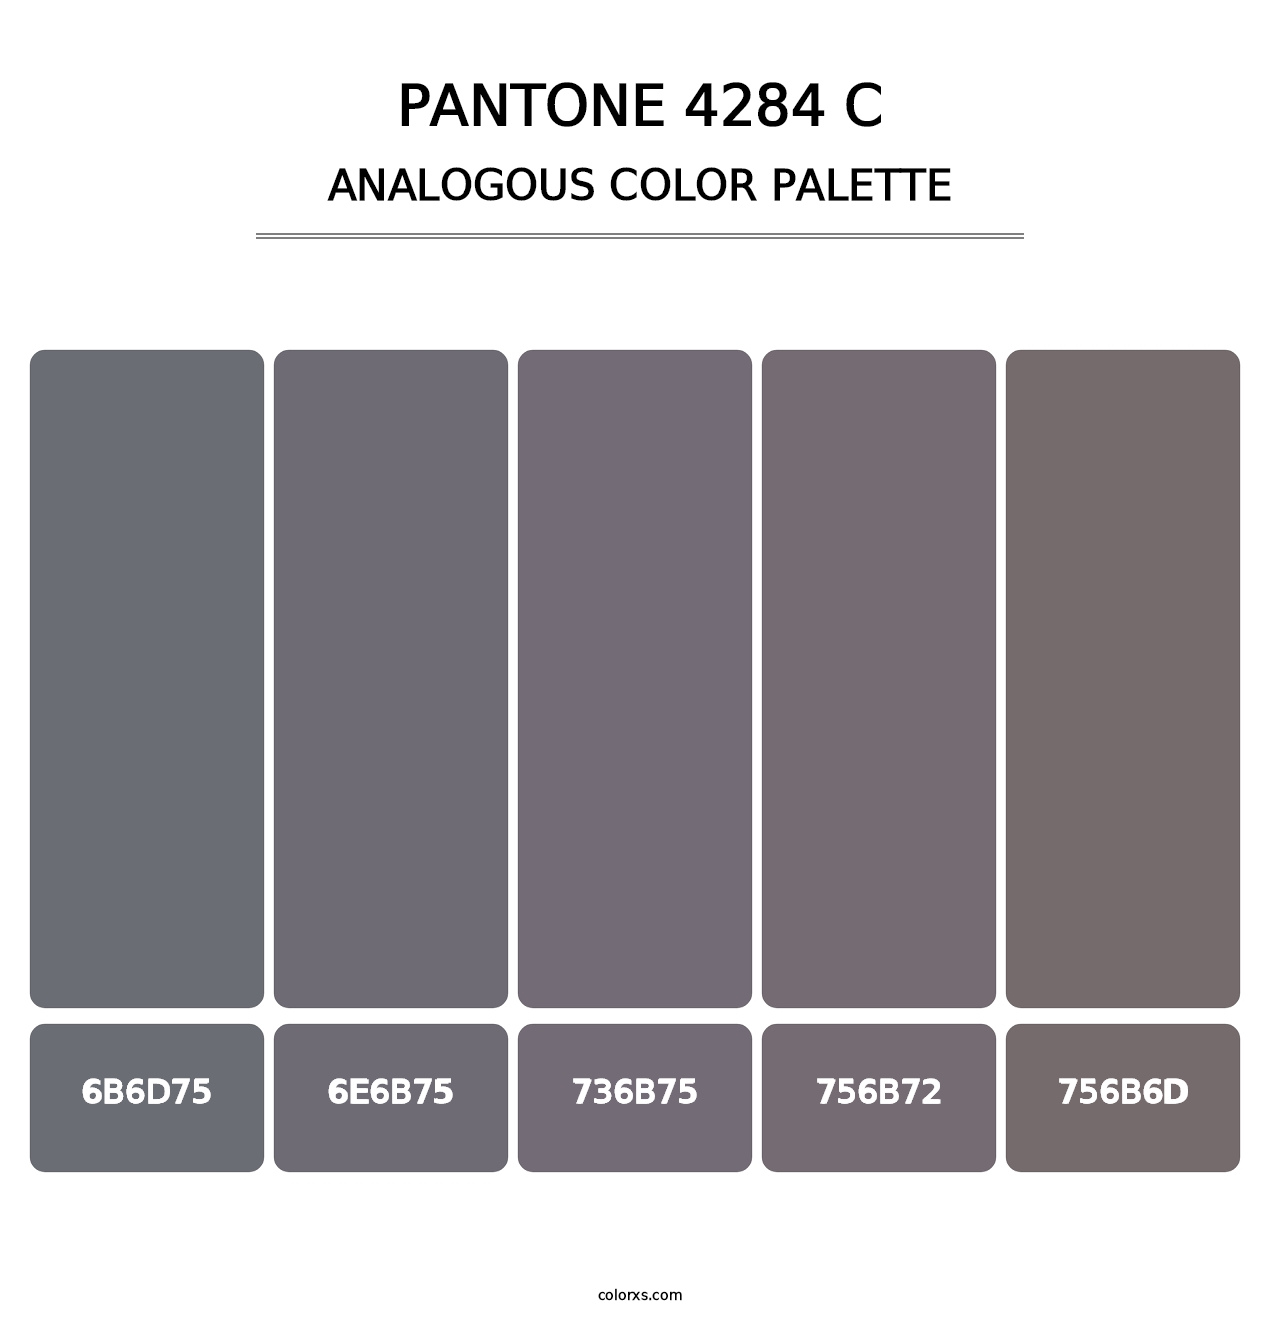 PANTONE 4284 C - Analogous Color Palette